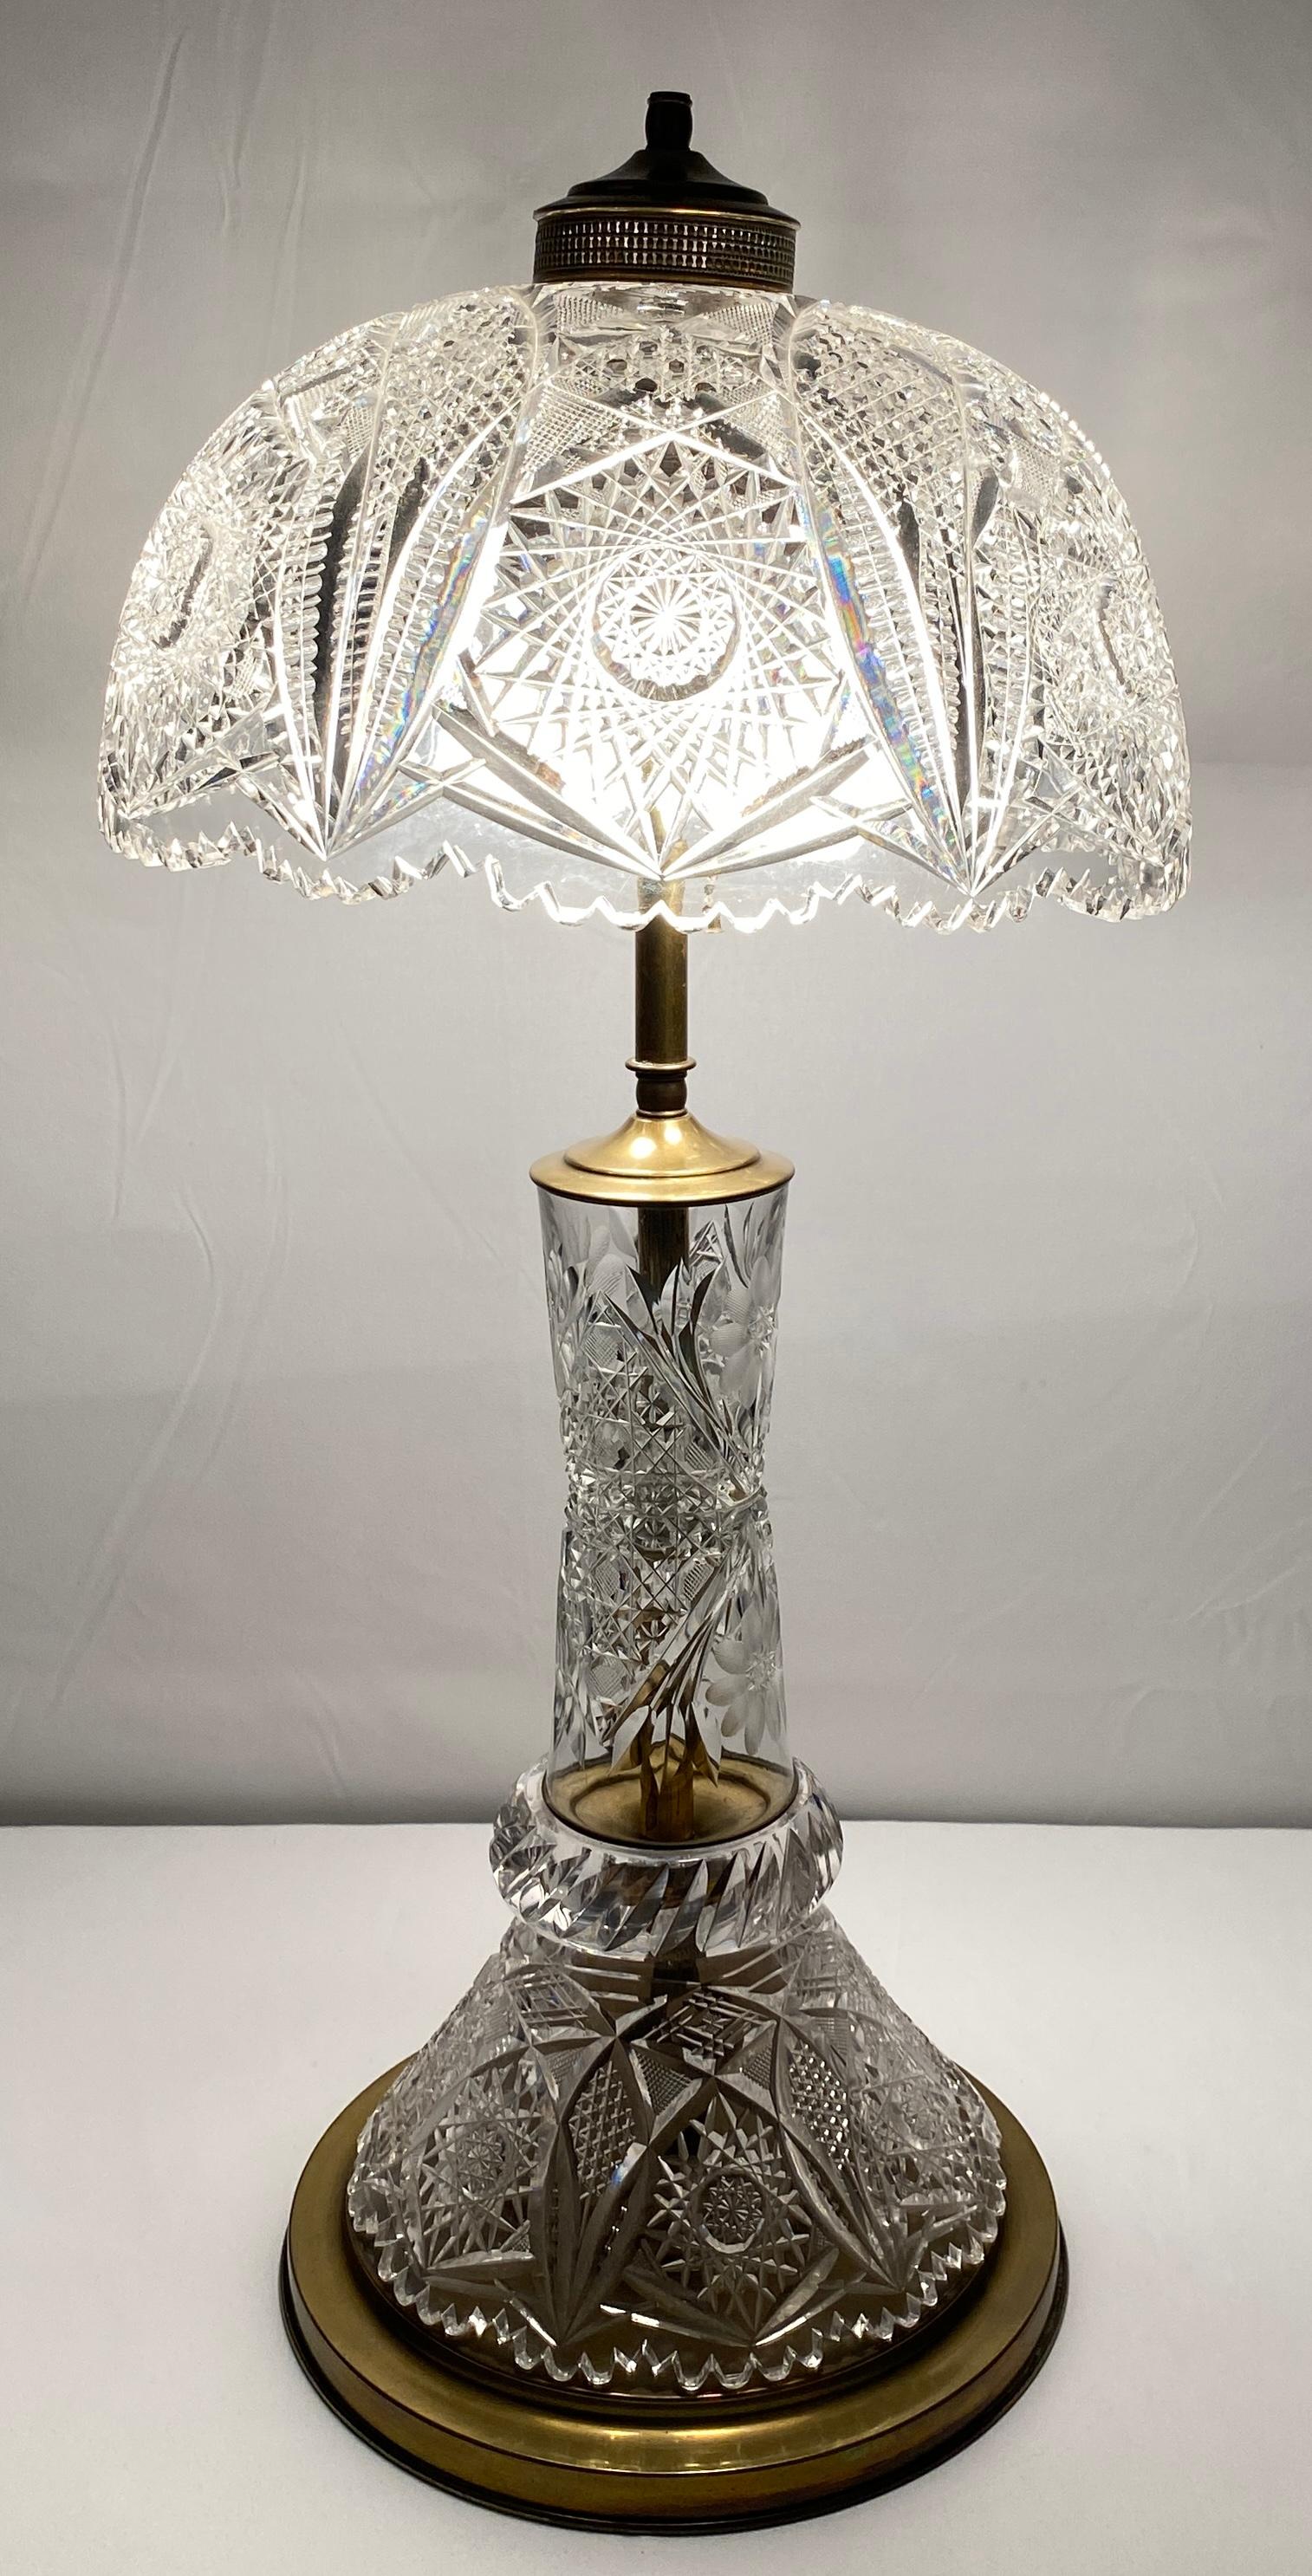 Lampe de table en cristal taillé brillant, le dôme en forme de champignon. Découpage fin de la meule  Abat-jour à motifs en forme de diamant entouré d'un anneau de prismes sur une base en laiton en forme de balustre.

Cette lampe de table en cristal